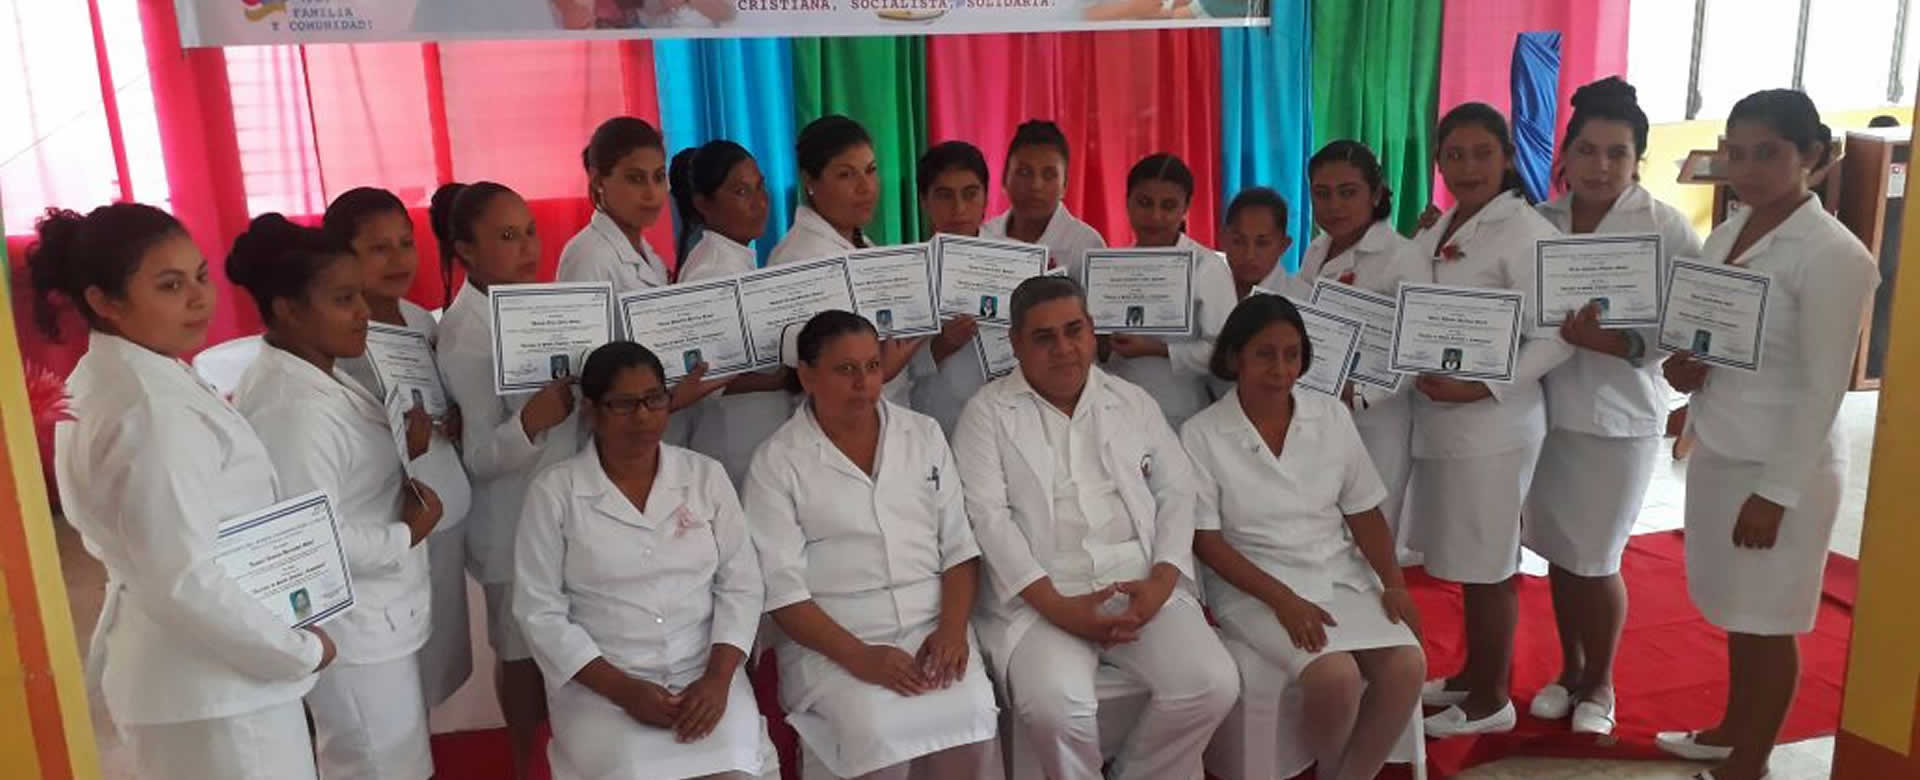 Estudiantes de Enfermería Auxiliar y Comunitaria reciben diplomas académicos en Madriz